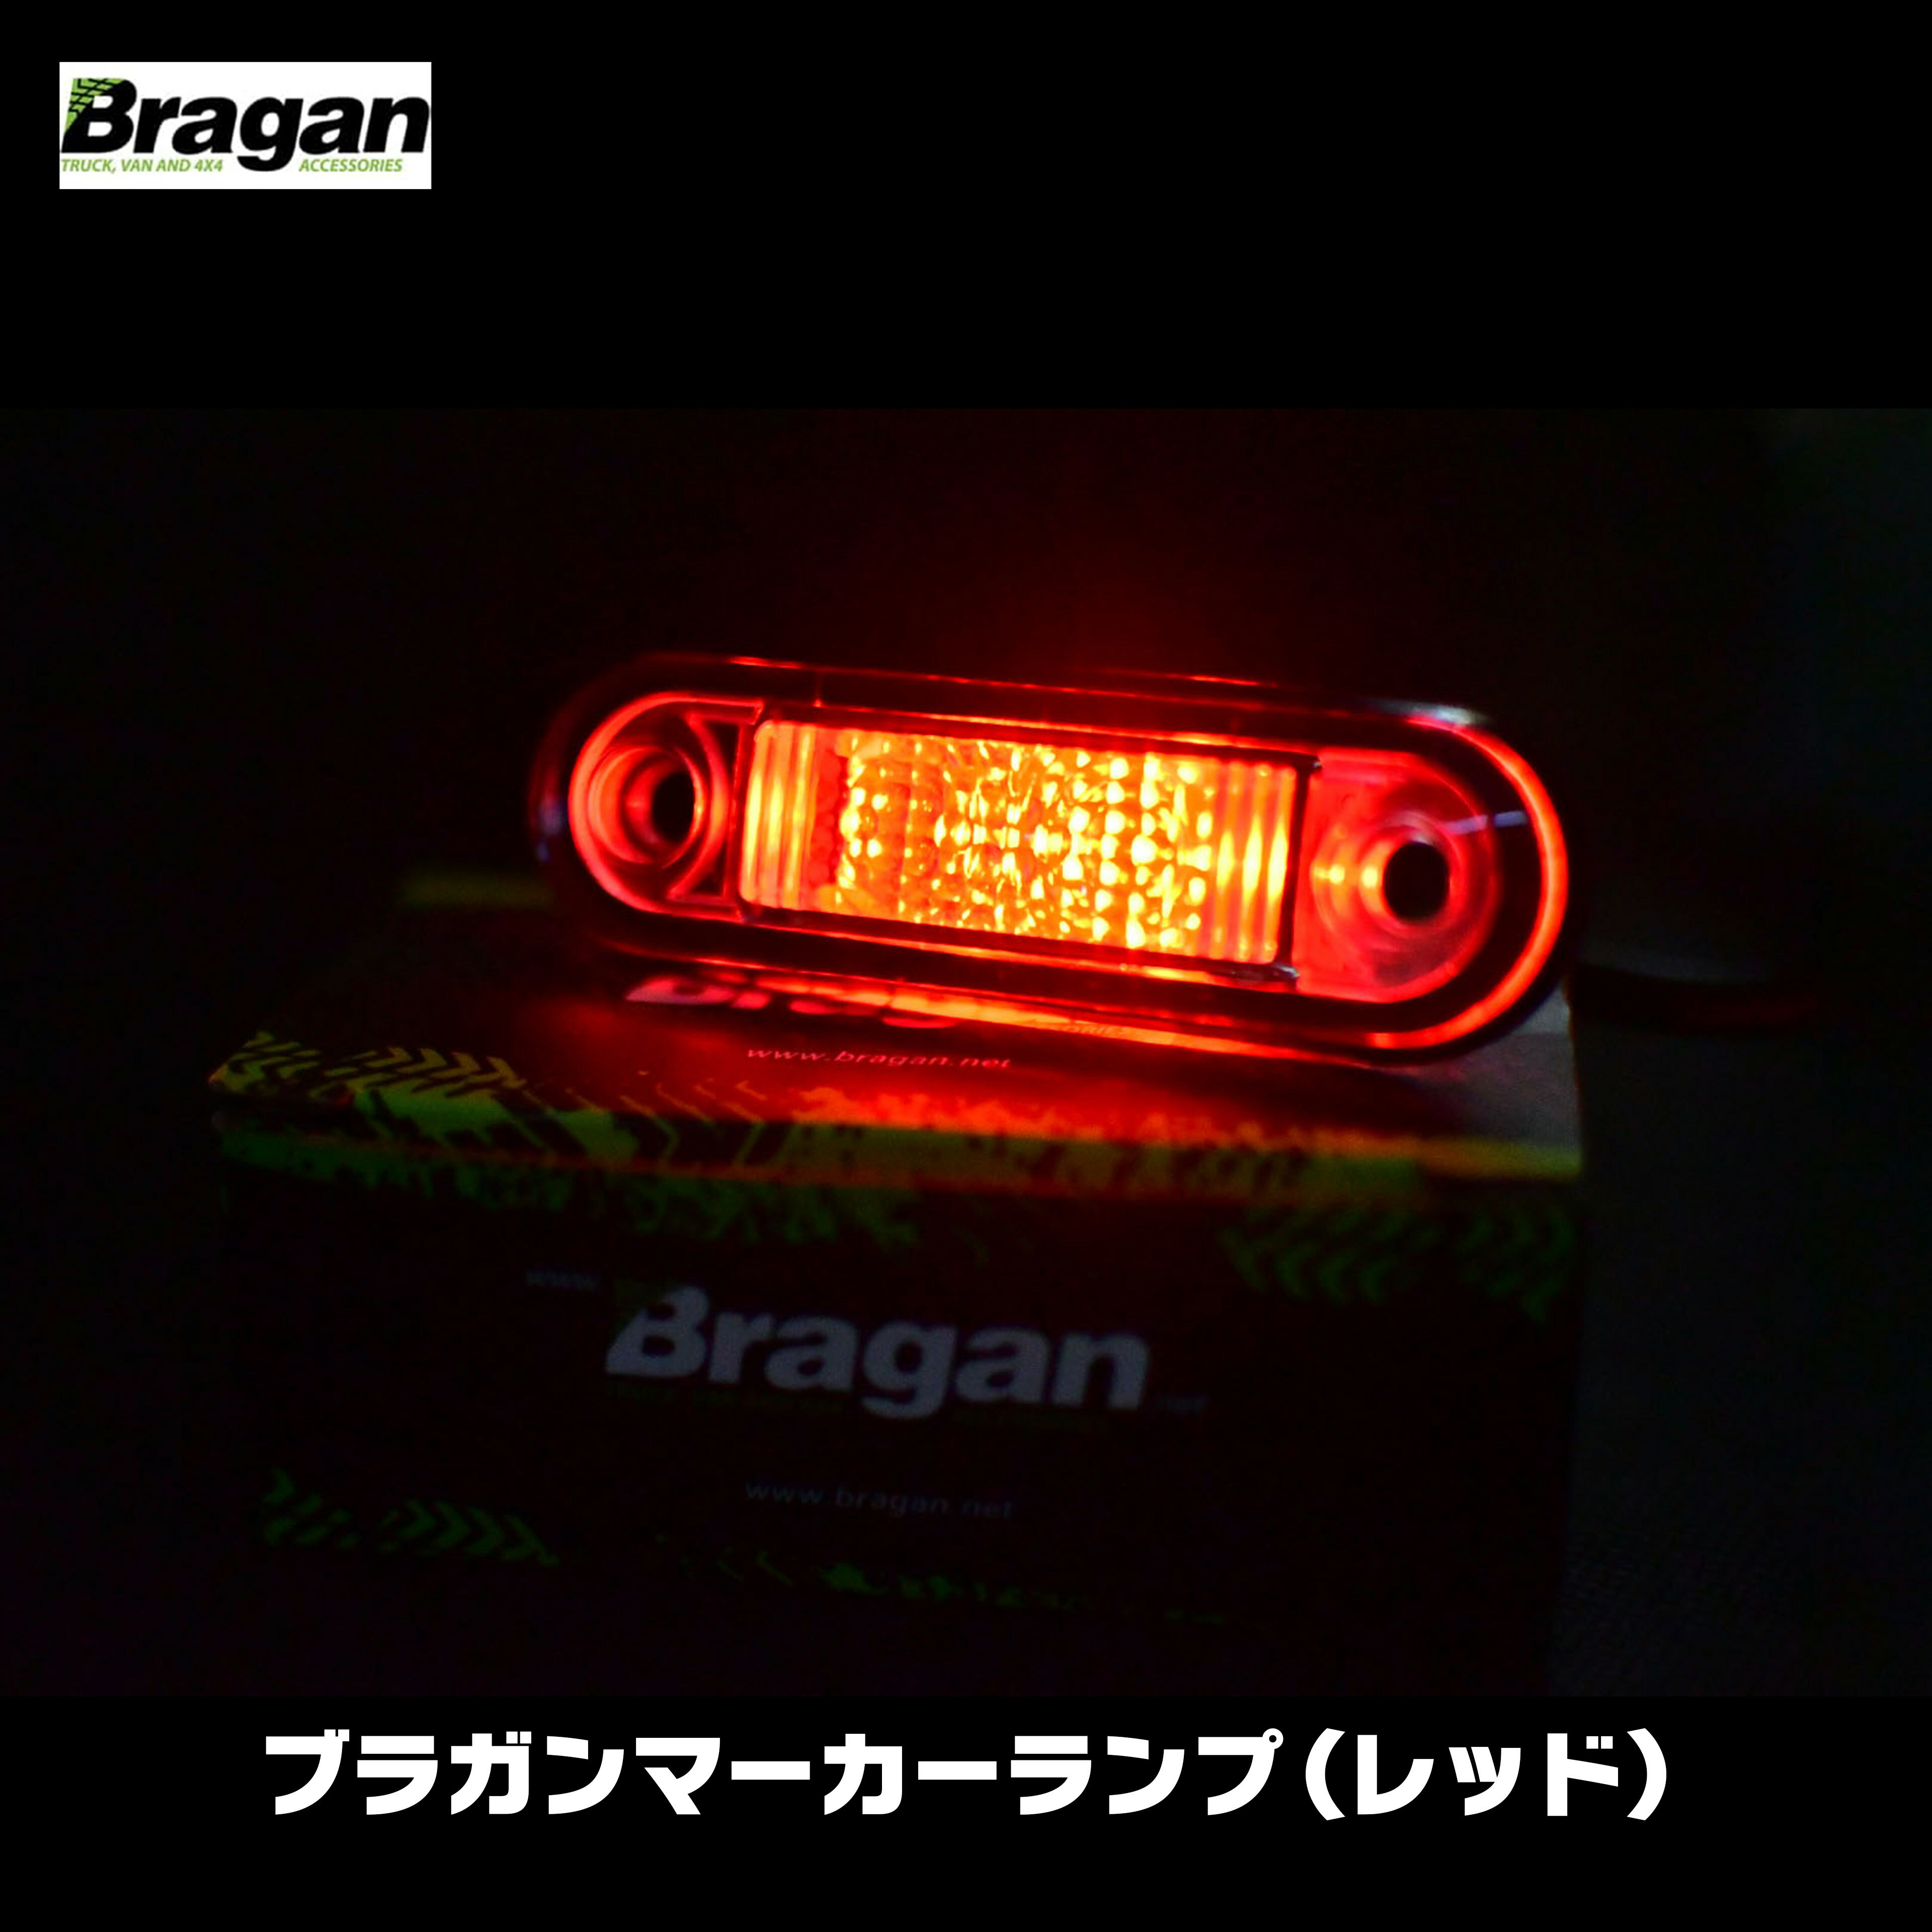 【送料無料】Bragan ブラガン マーカー LED ランプ サイド レッド 赤 ユーロ カスタム パーツ 24V トラック ボルボ スカニア scania volvo fh